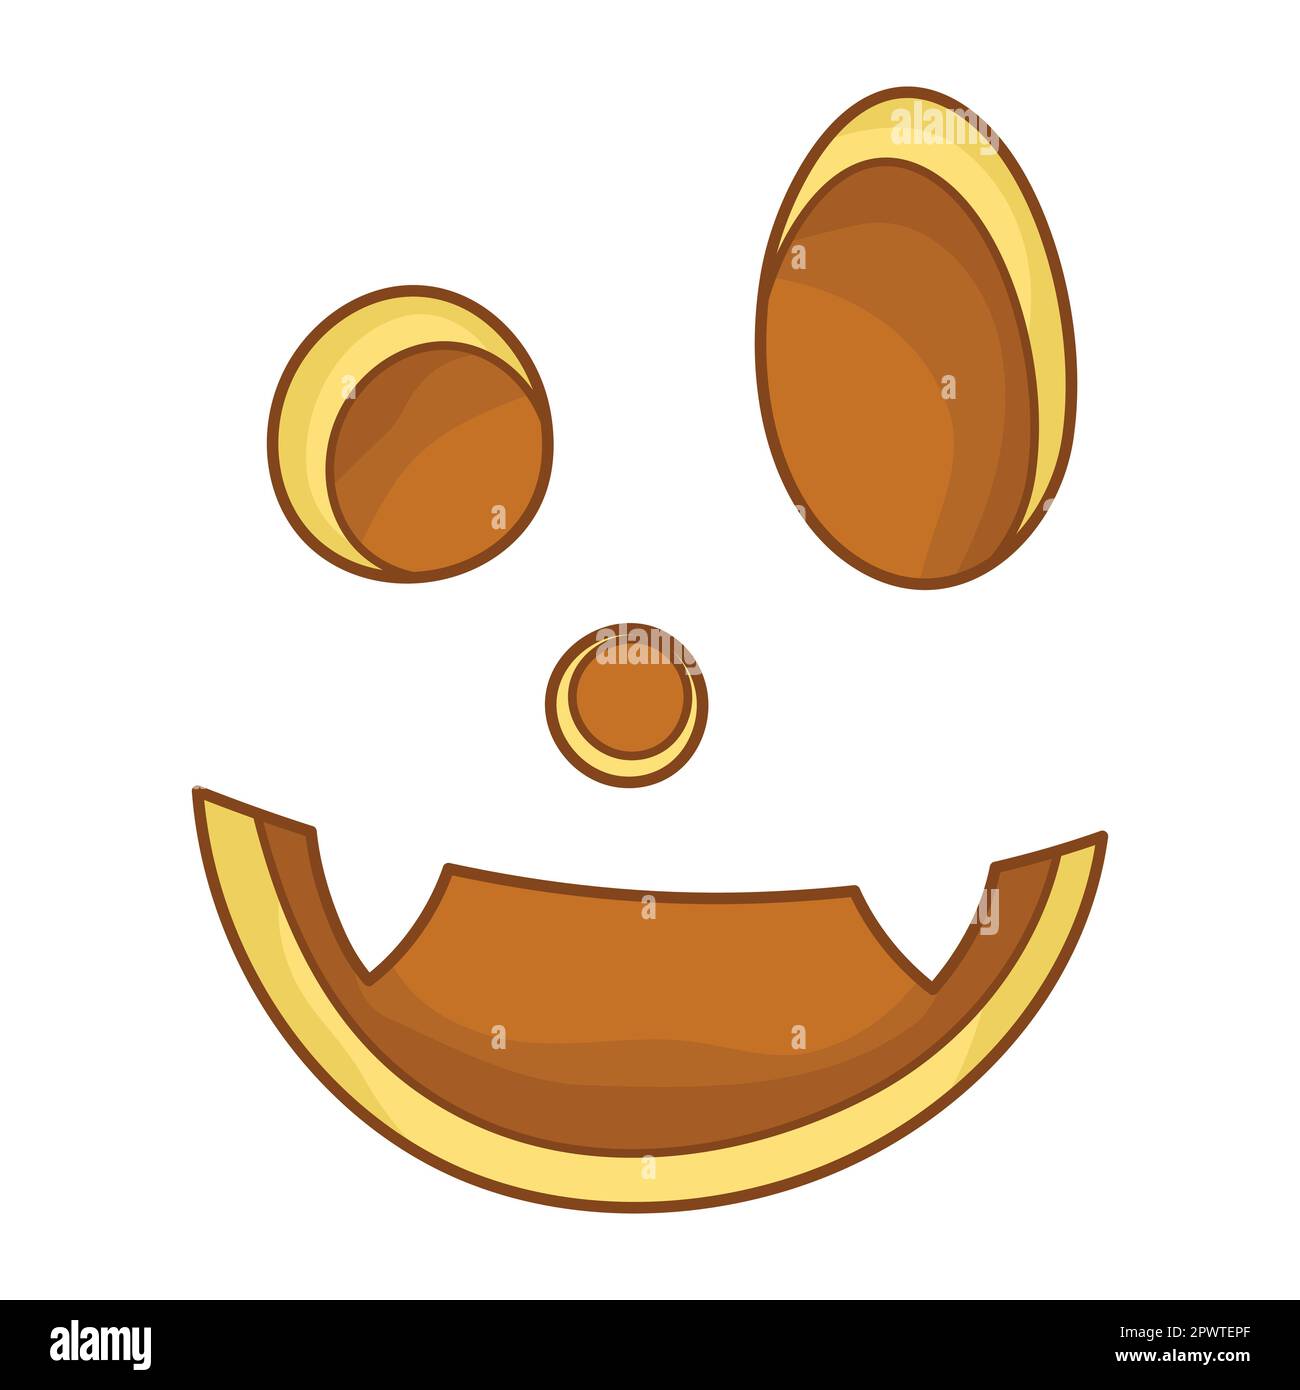 Fröhliches Lächeln für Jack-Laterne. Komischer Gesichtsausdruck. Eine fiktive Halloween-Cartoon-Figur. Einfaches, flaches Element für das Weihnachtsdesign. Isoliert Stock Vektor